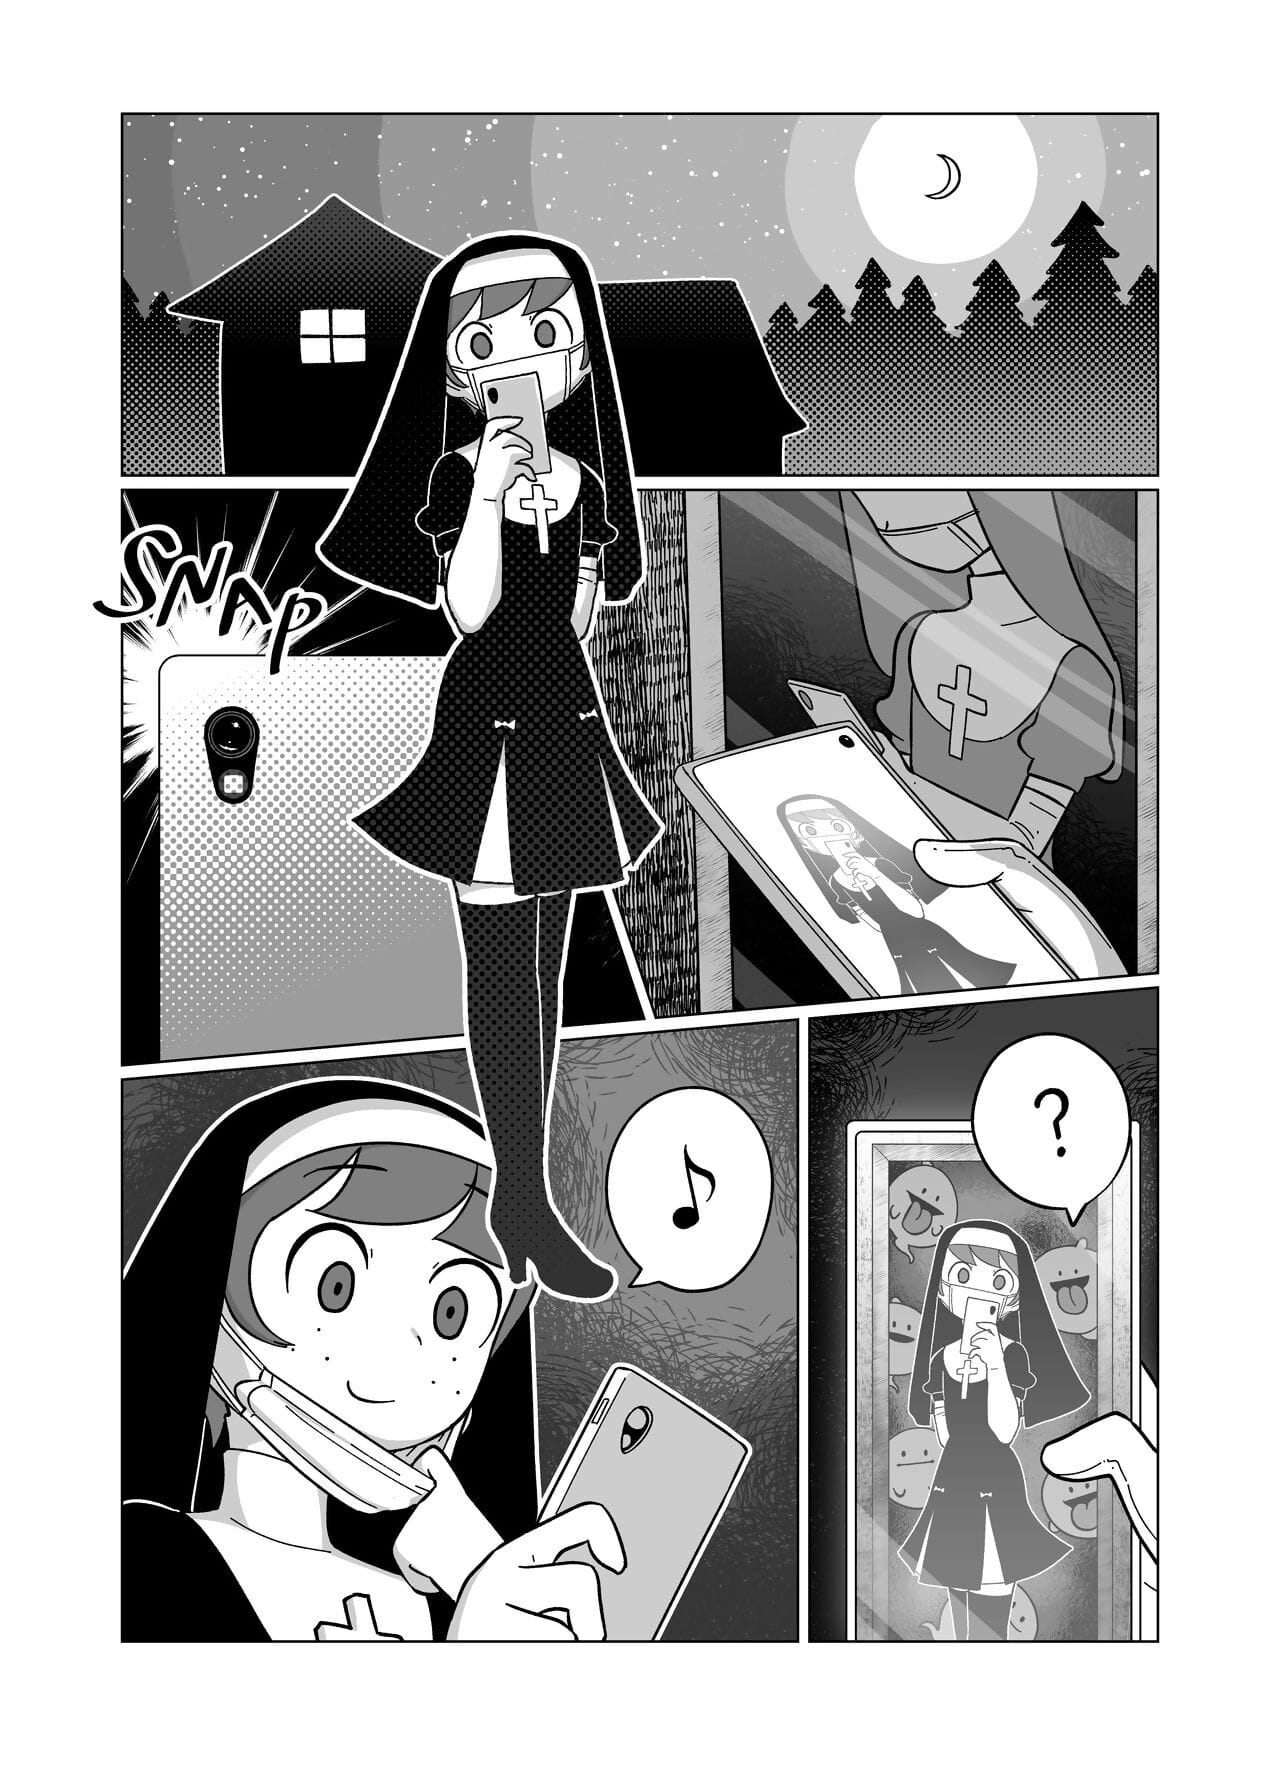 Marina e melancólico combo Quadrinhos page 1